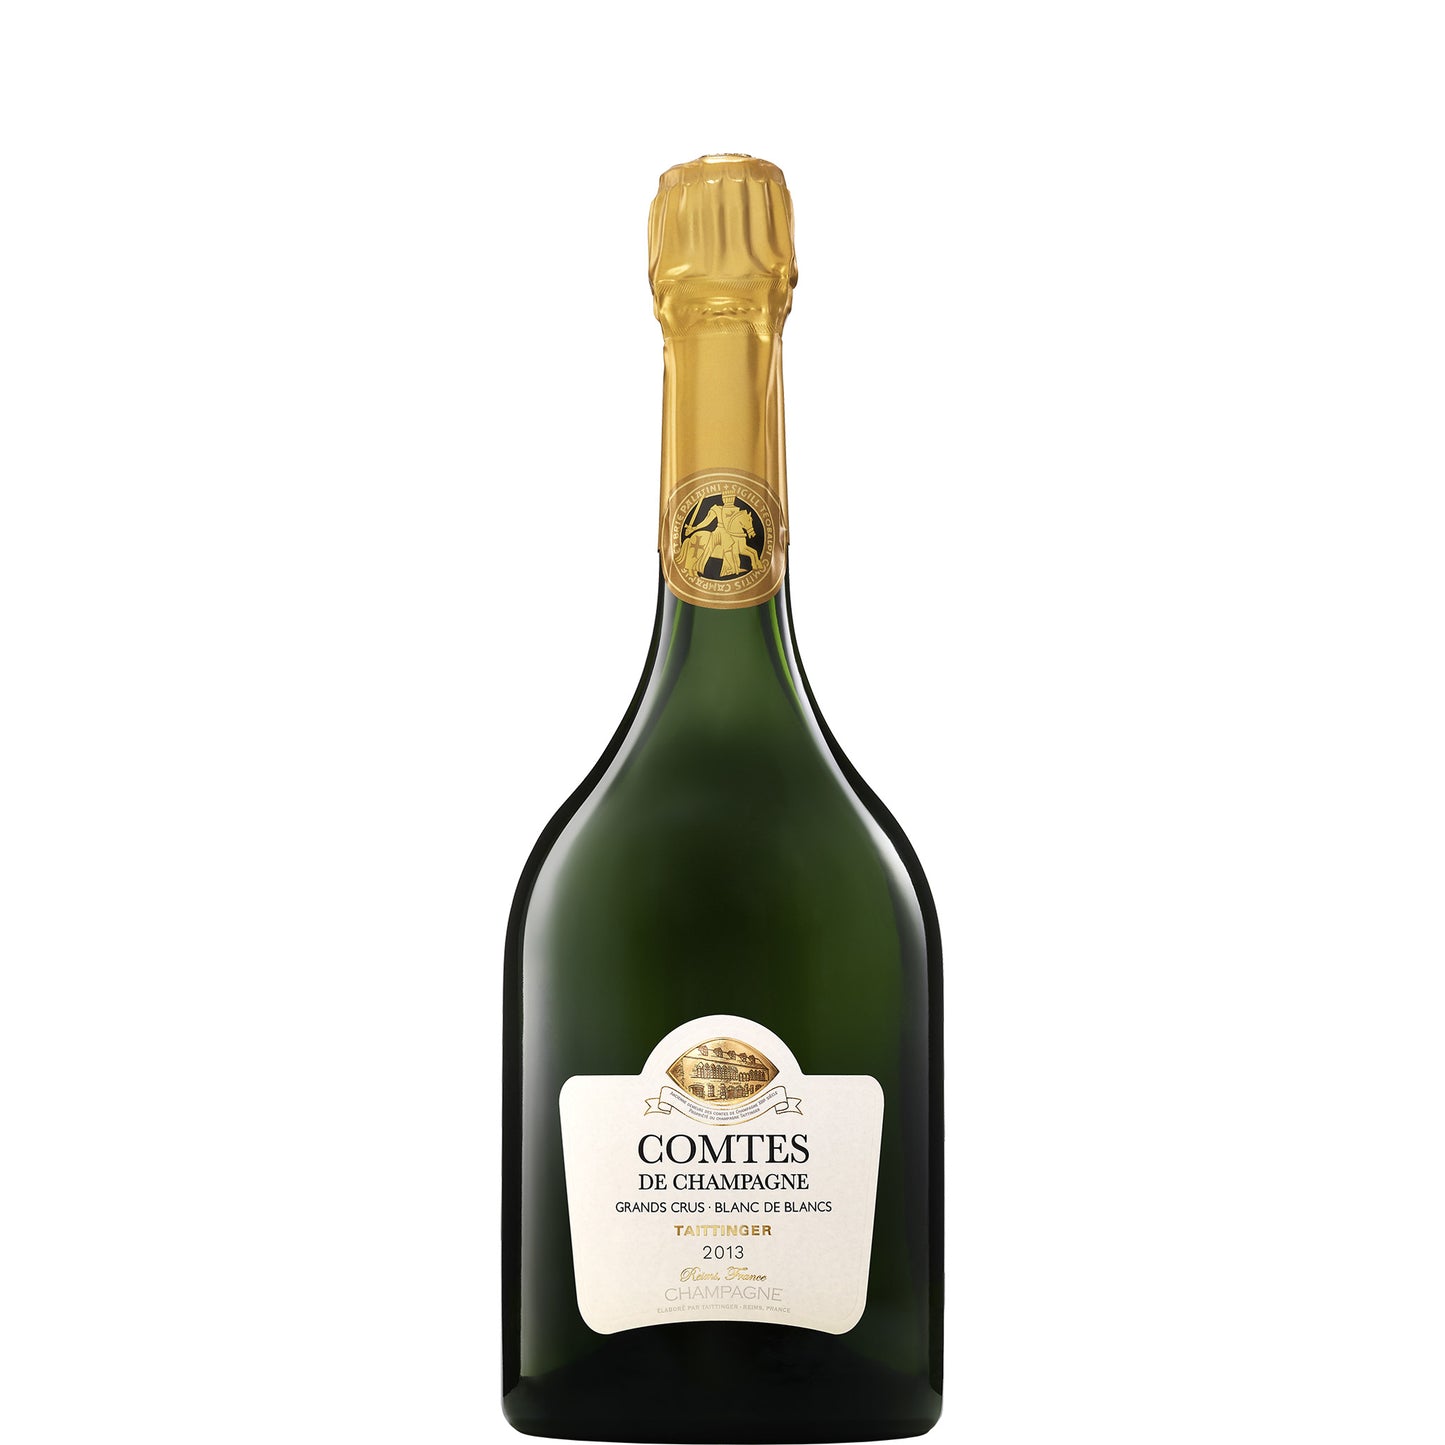 Taittinger Comtes de Champagne, Blanc de Blancs Brut, 2013